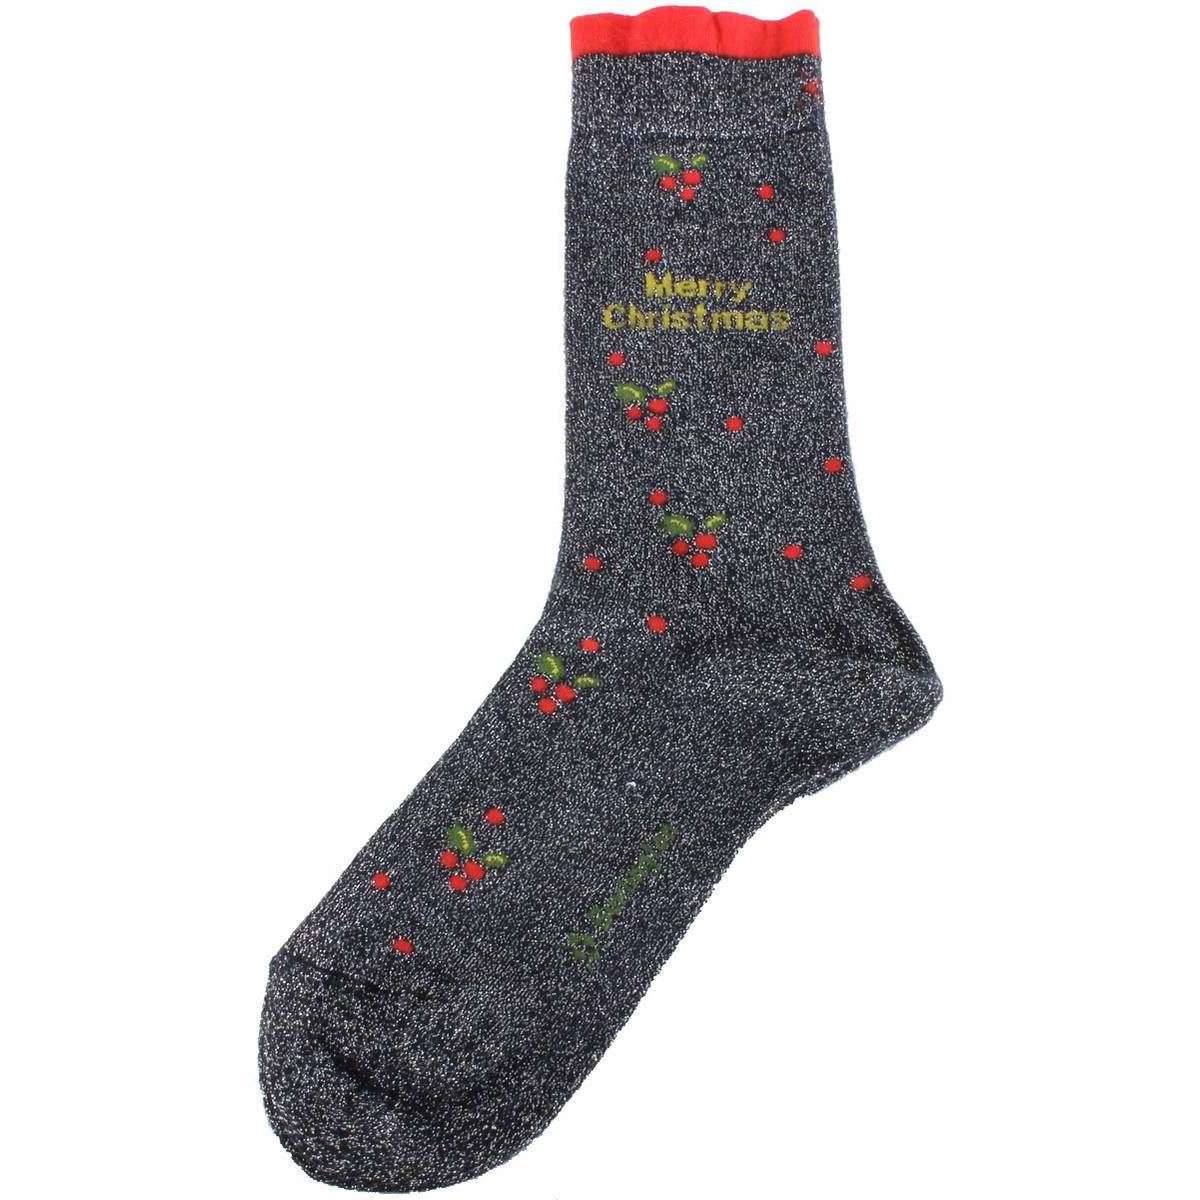 Burlington Merry Christmas Glitter Socks - Dark Navy/Red